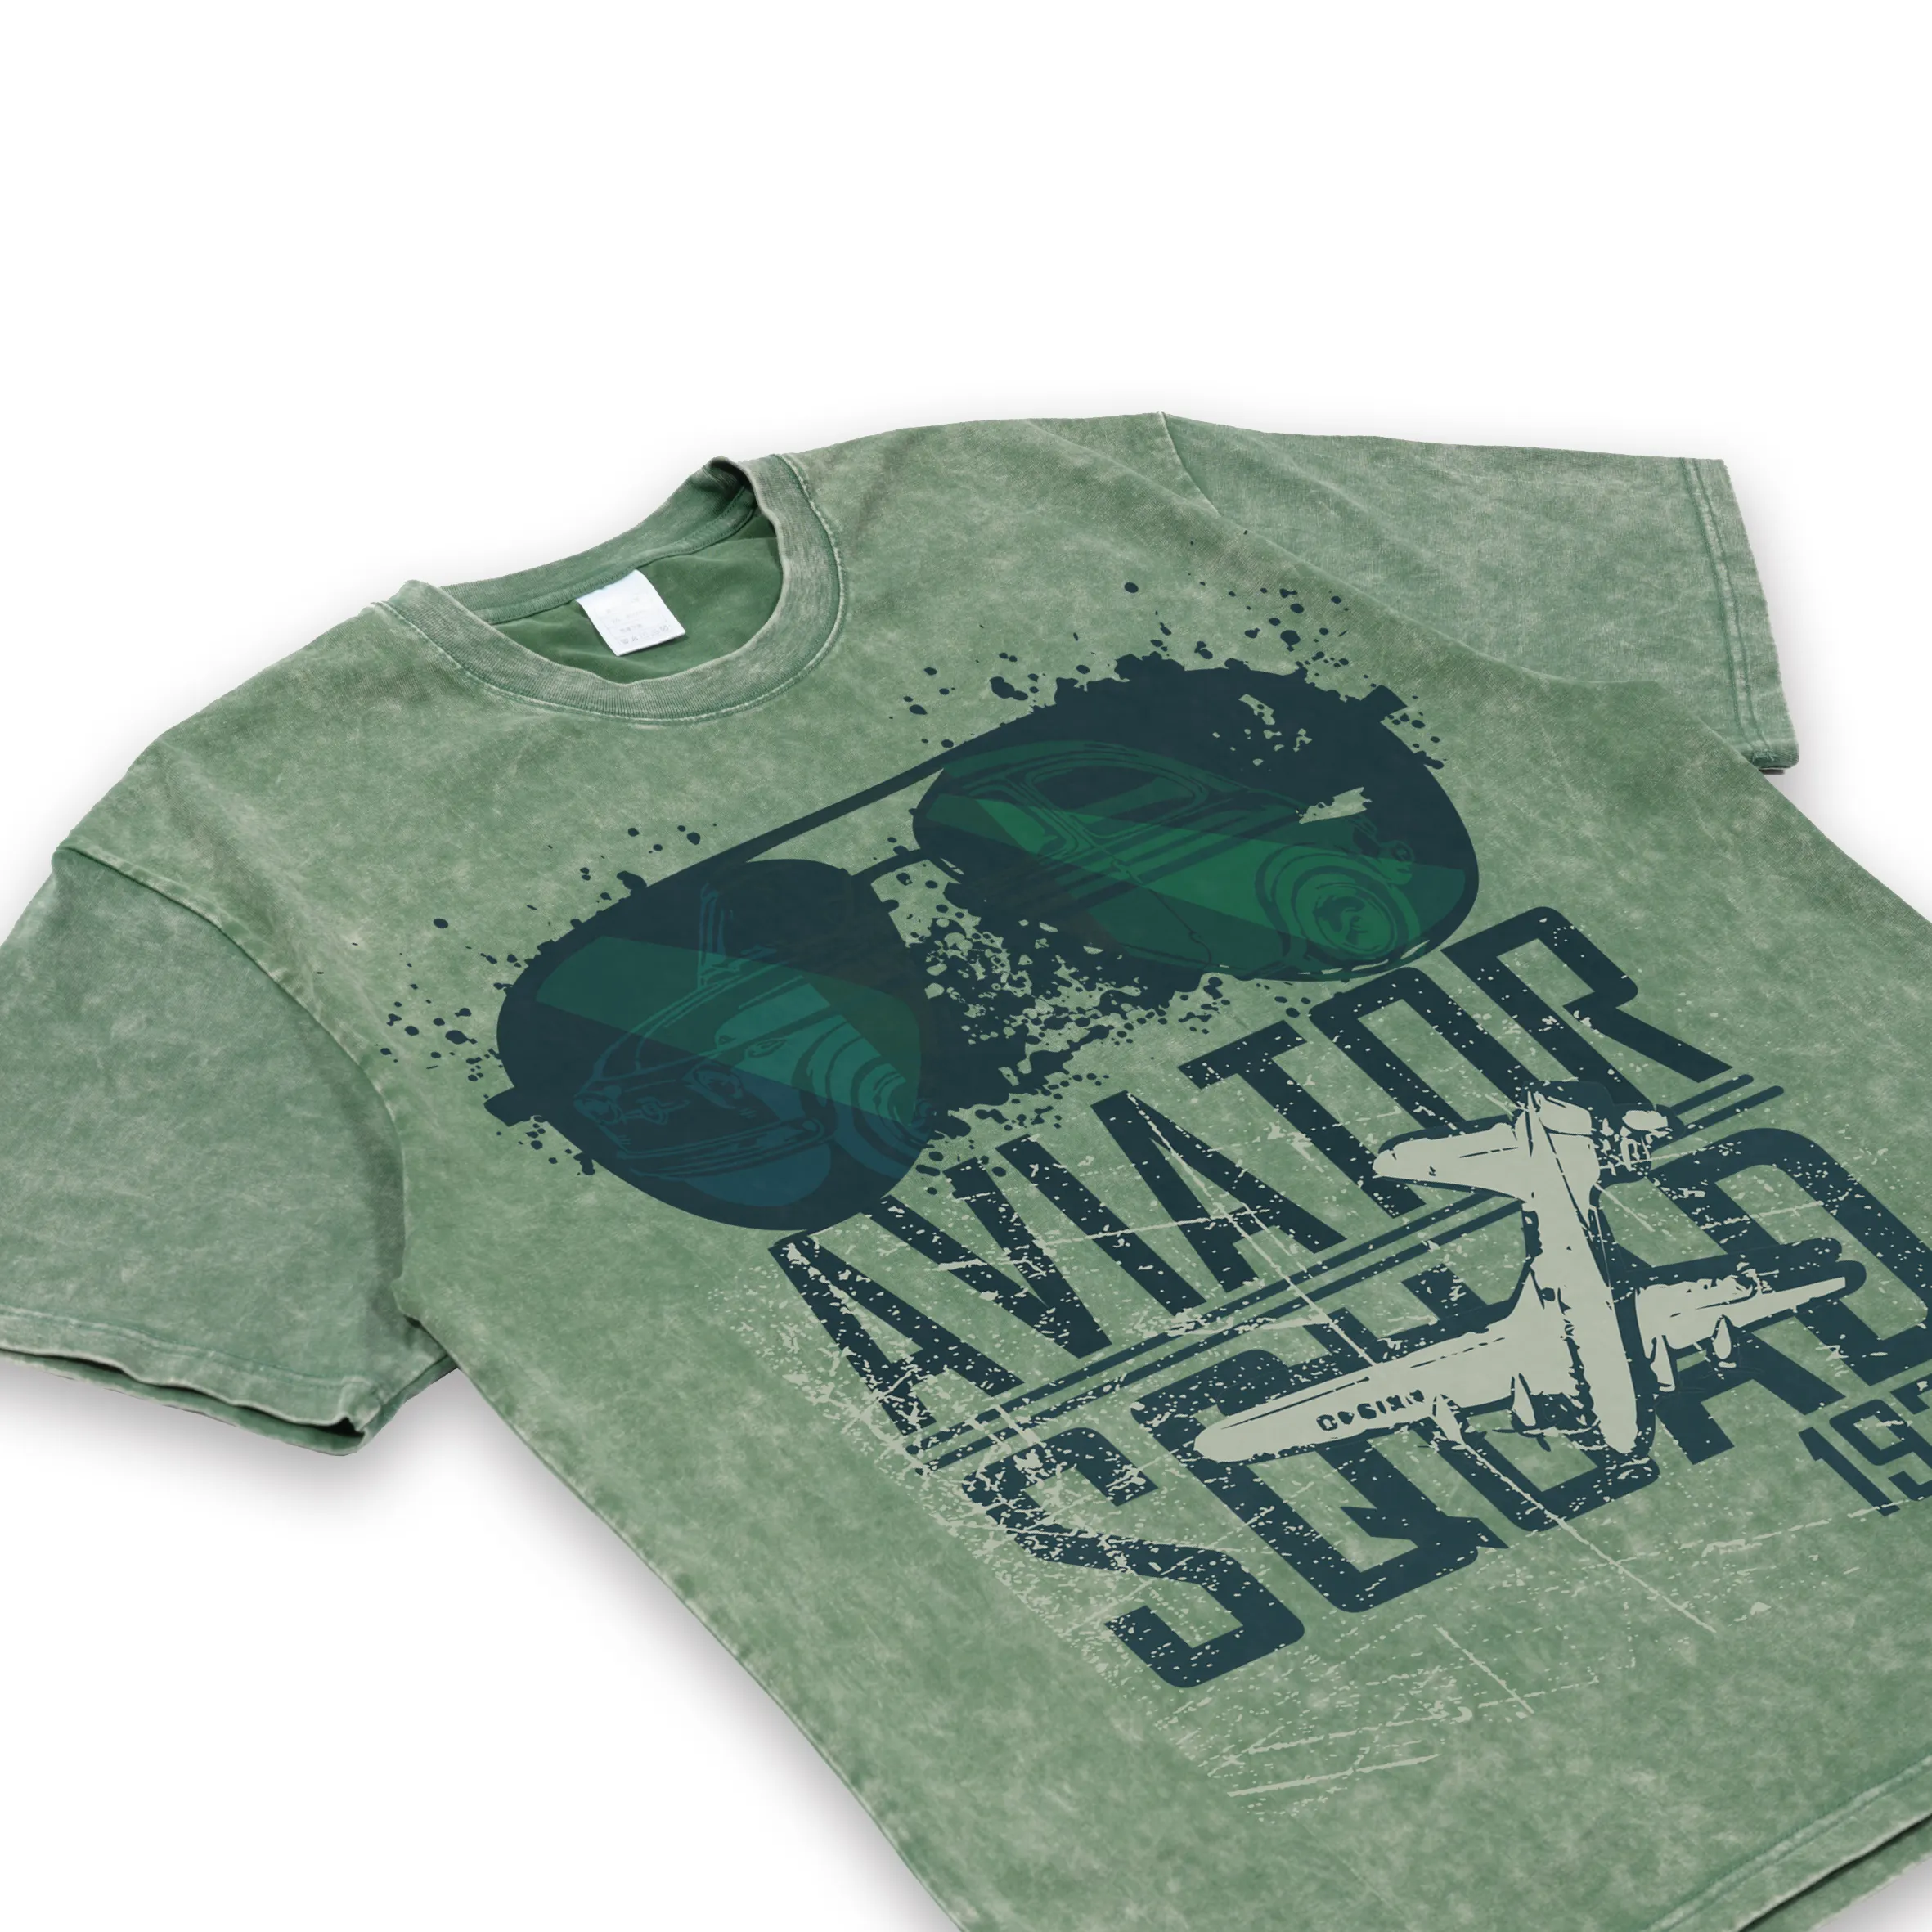 Ingrosso colore solido senza marchio lavare e rendere vecchia maglietta oversize personalizzata da uomo verde vintage lavata